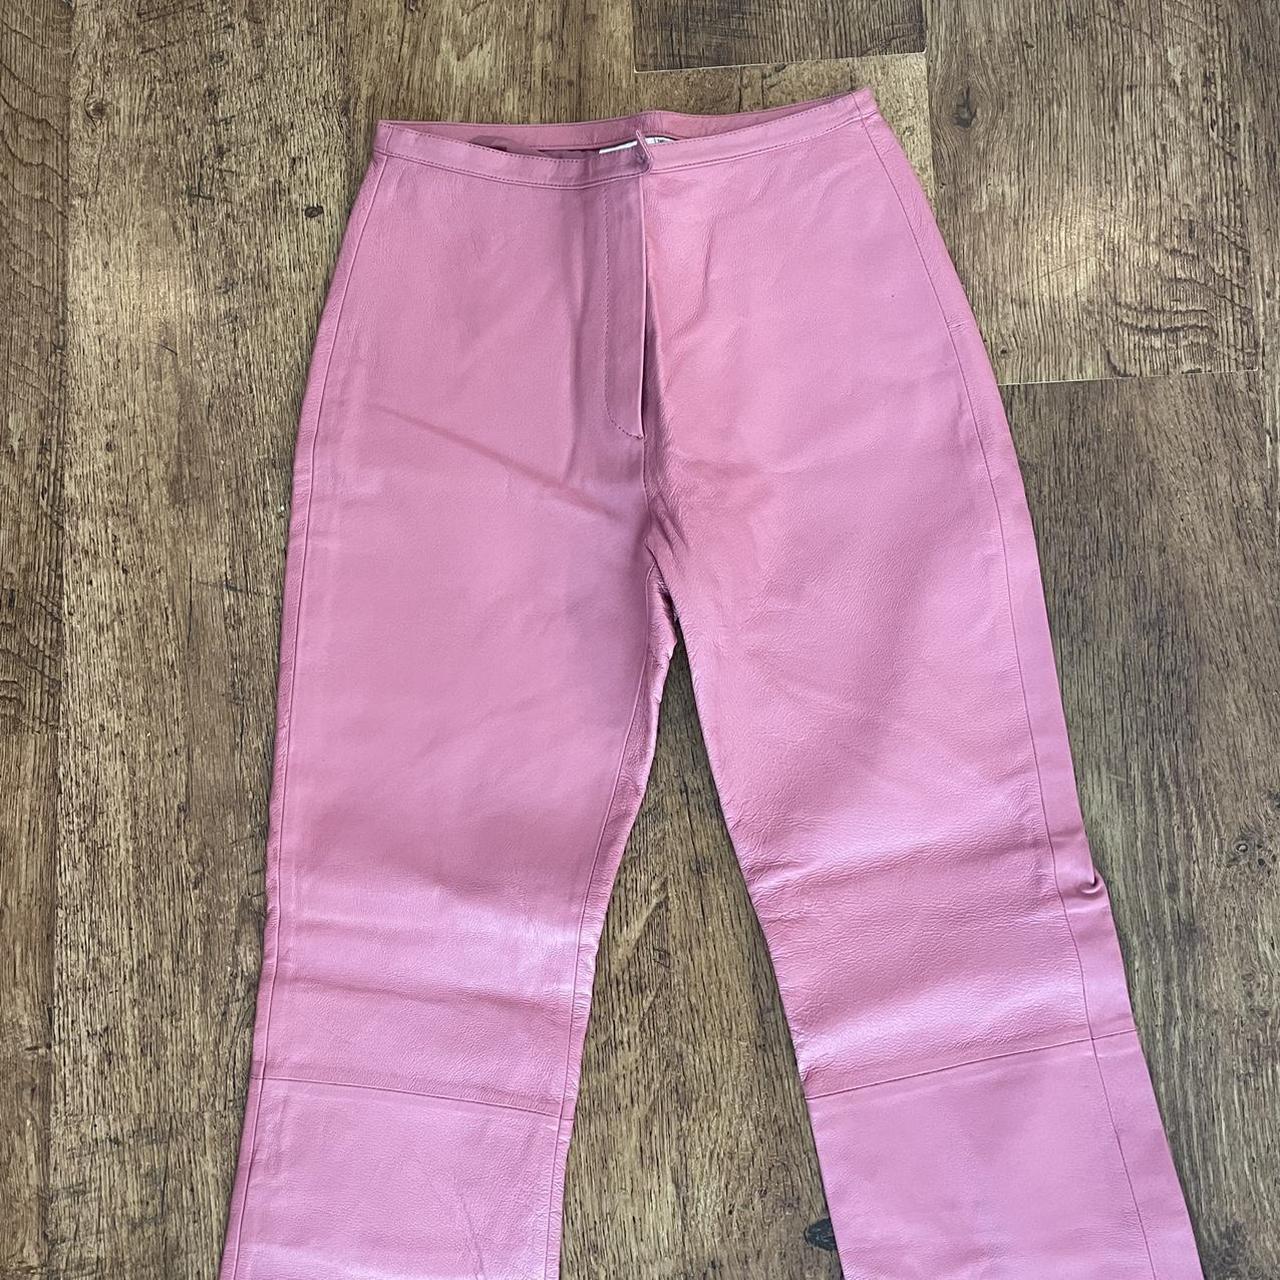 90s bubble gum pink Leather pants #y2k #leather... - Depop